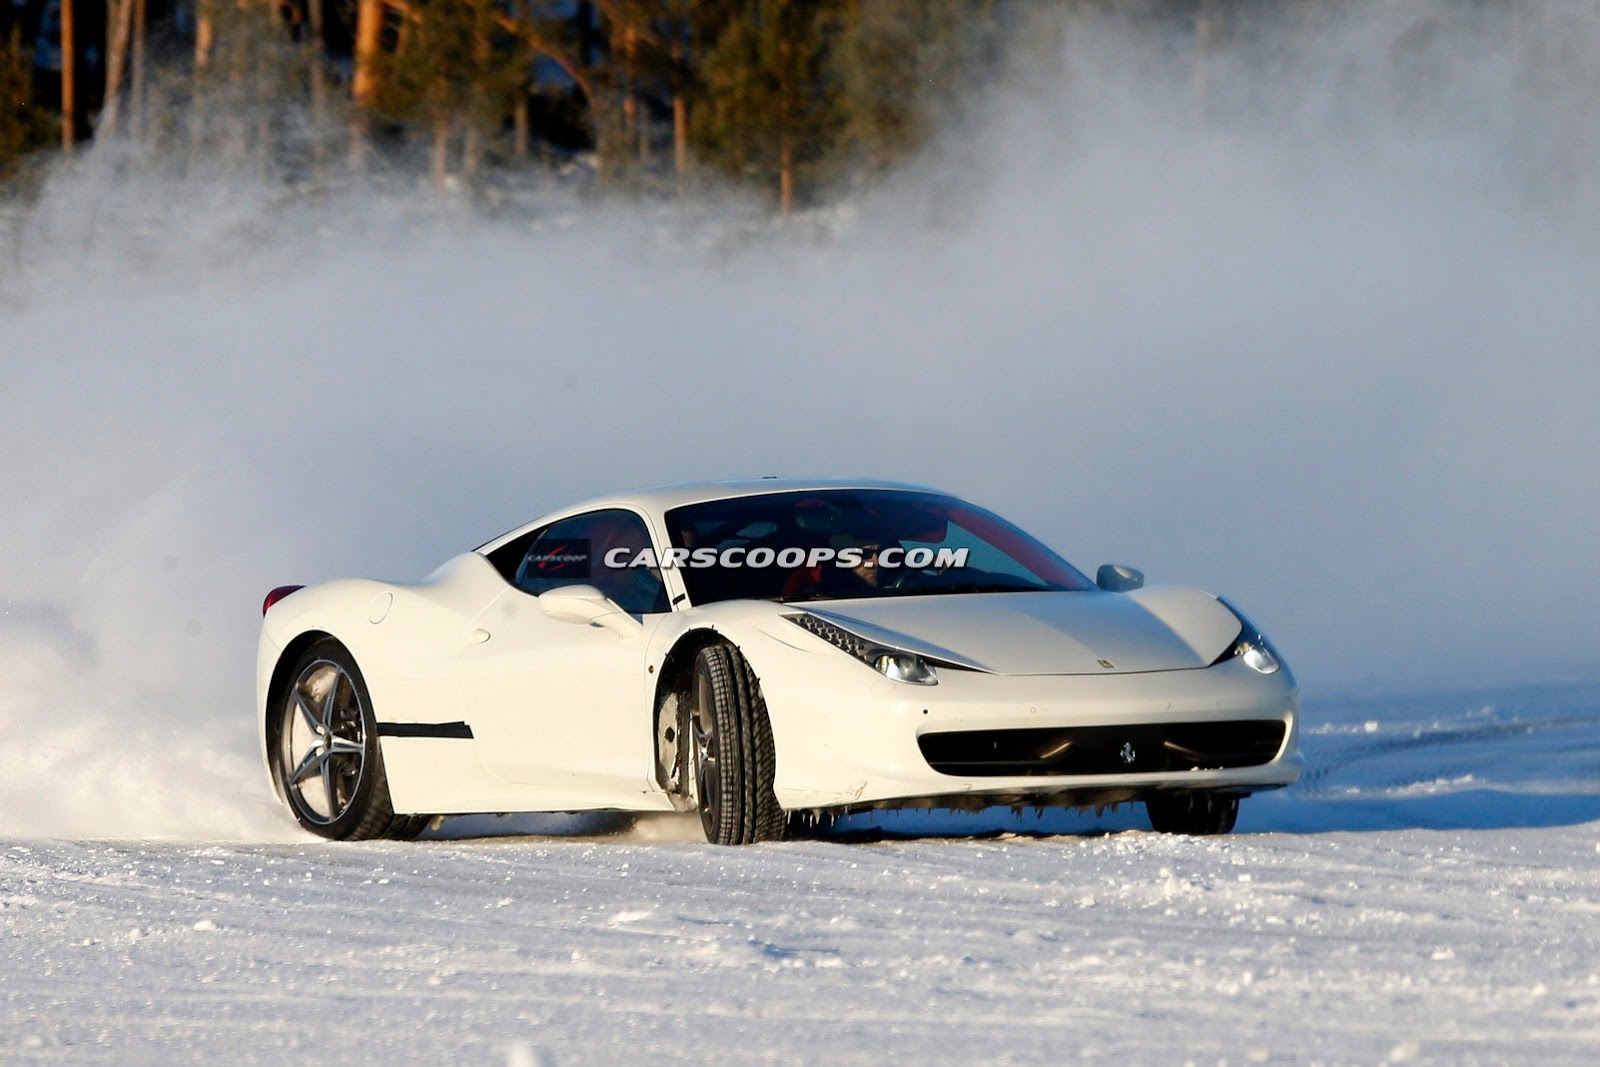 صور تجسسية تكشف نموذج اختباري لسيارة فيراري 458 المستقبلية Ferrari 458 3